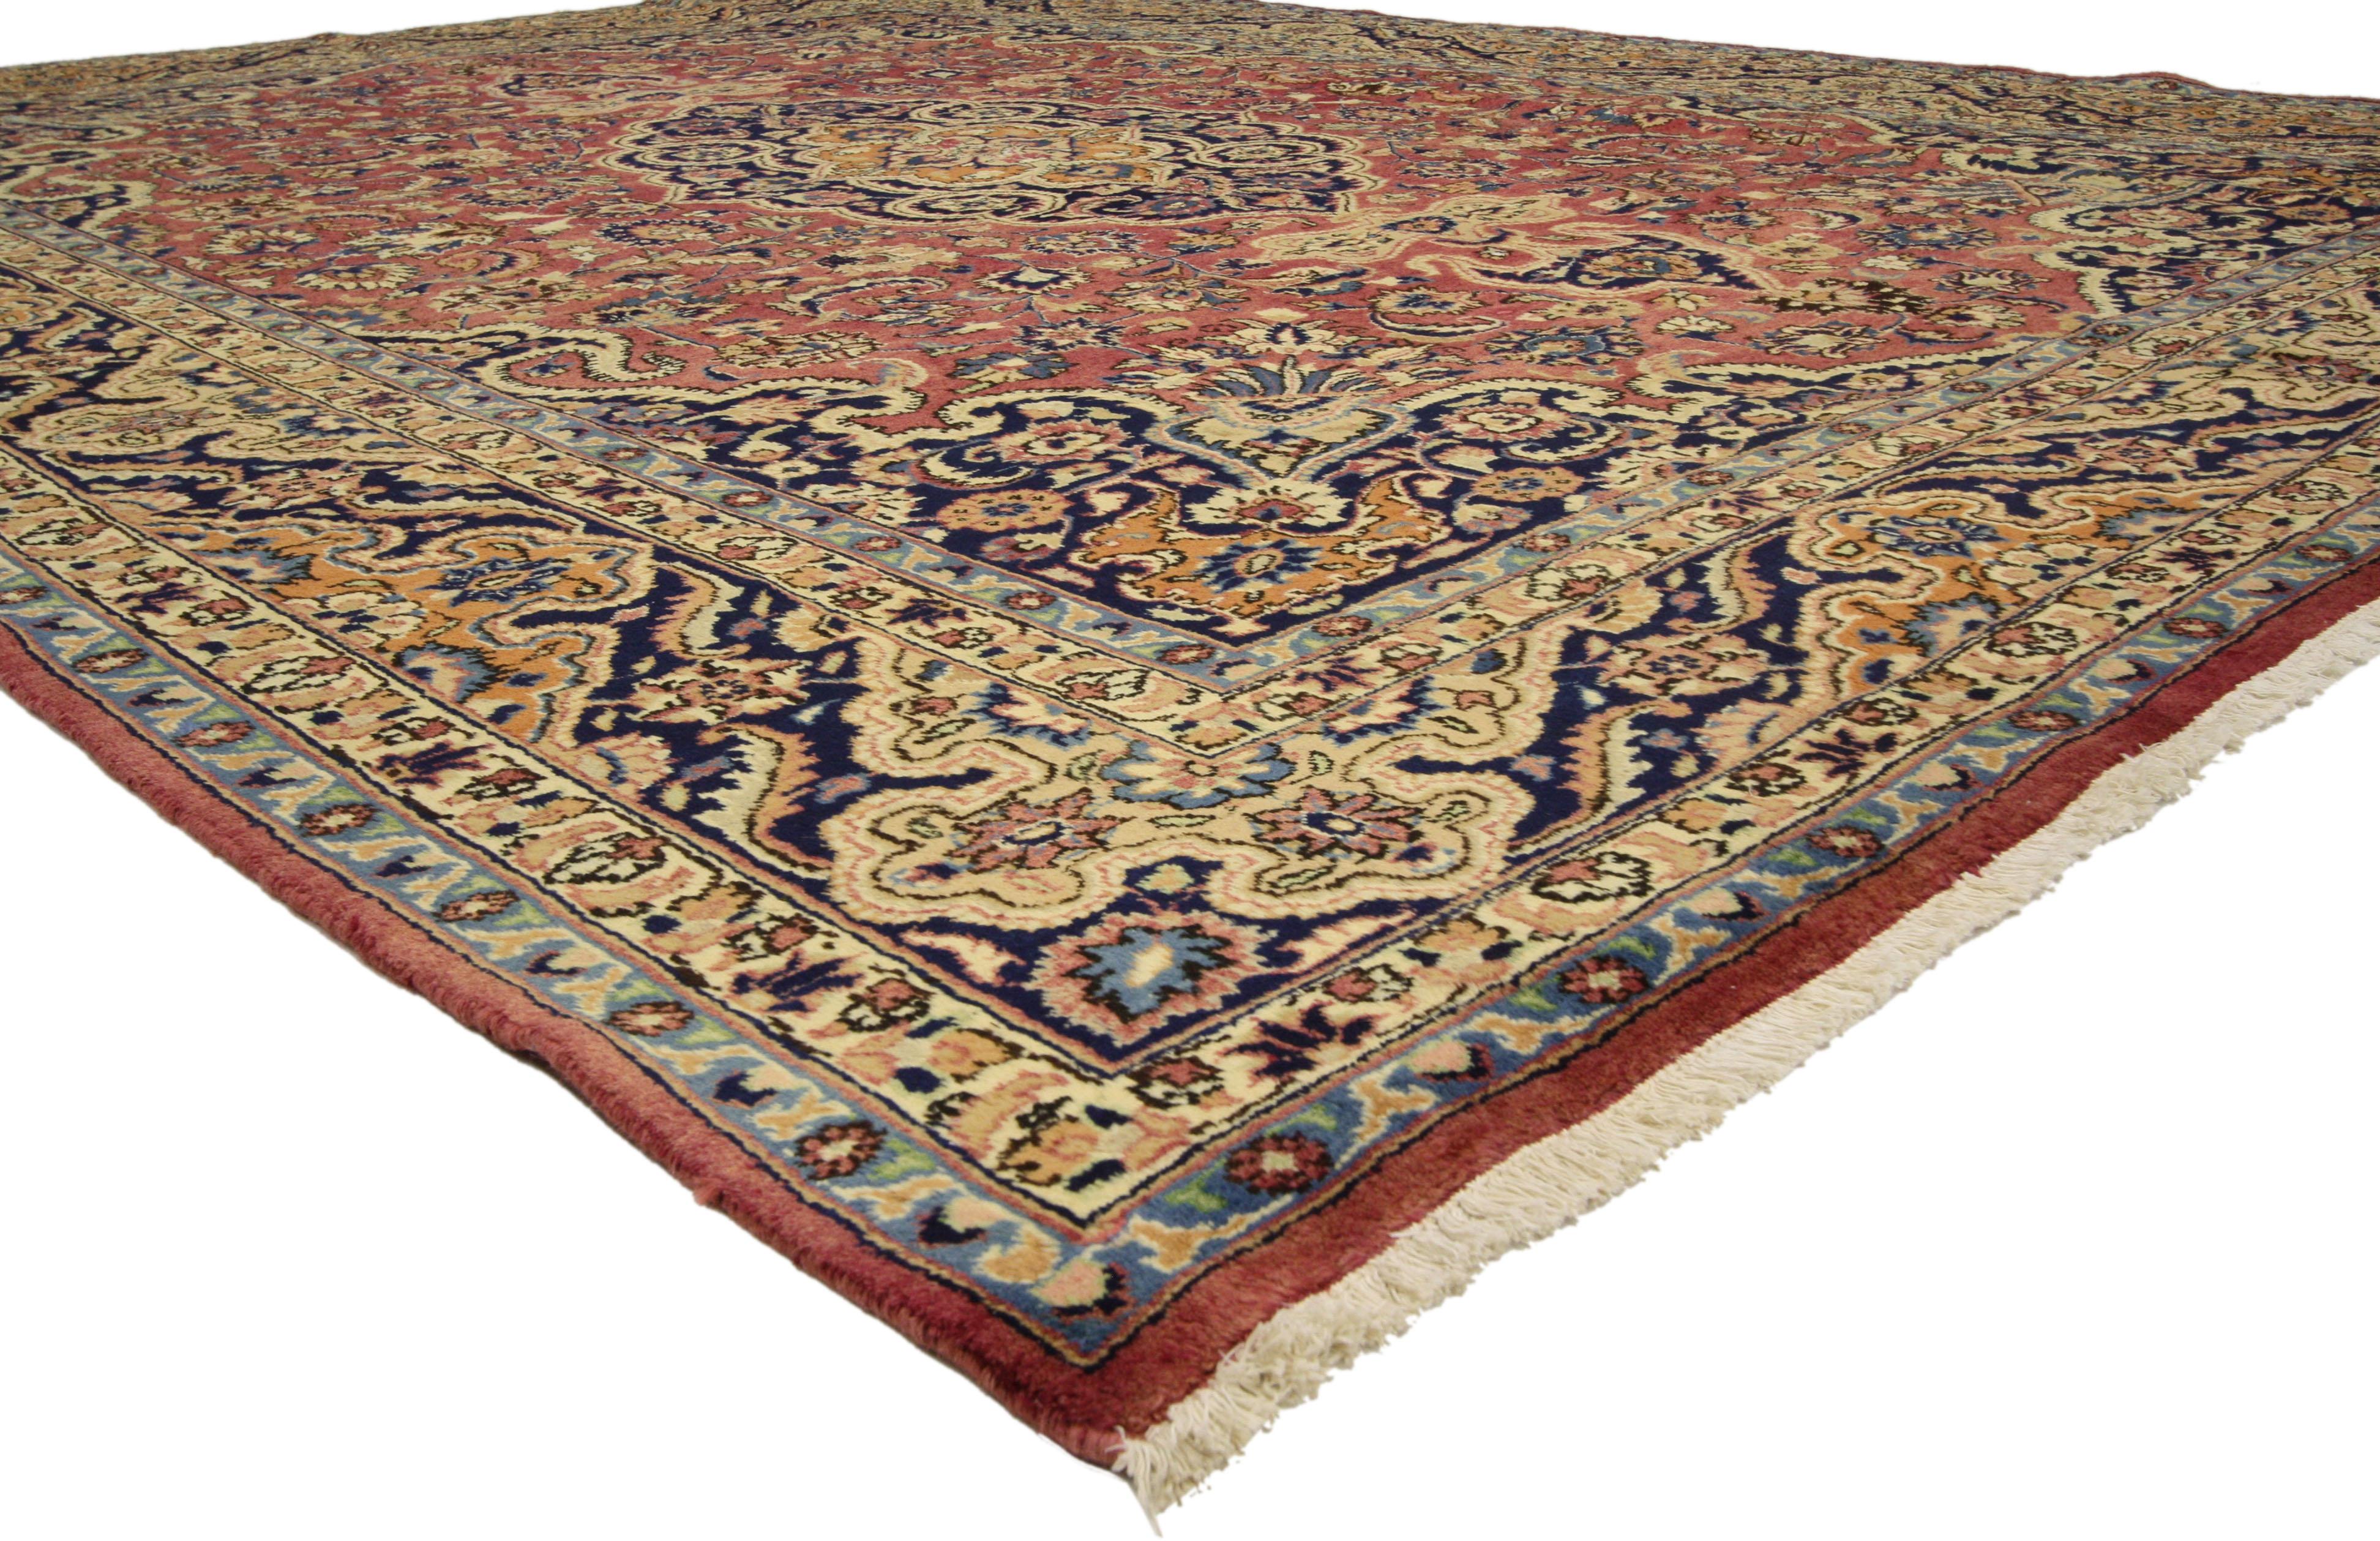 76310 Tapis de sol persan vintage Mashhad avec style Arabesque Baroque Regency. Ce tapis Mashhad persan vintage en laine noué à la main présente un médaillon Mashhad à losange cuspidé flanqué de fleurons à palmettes dans un champ de palmettes, de